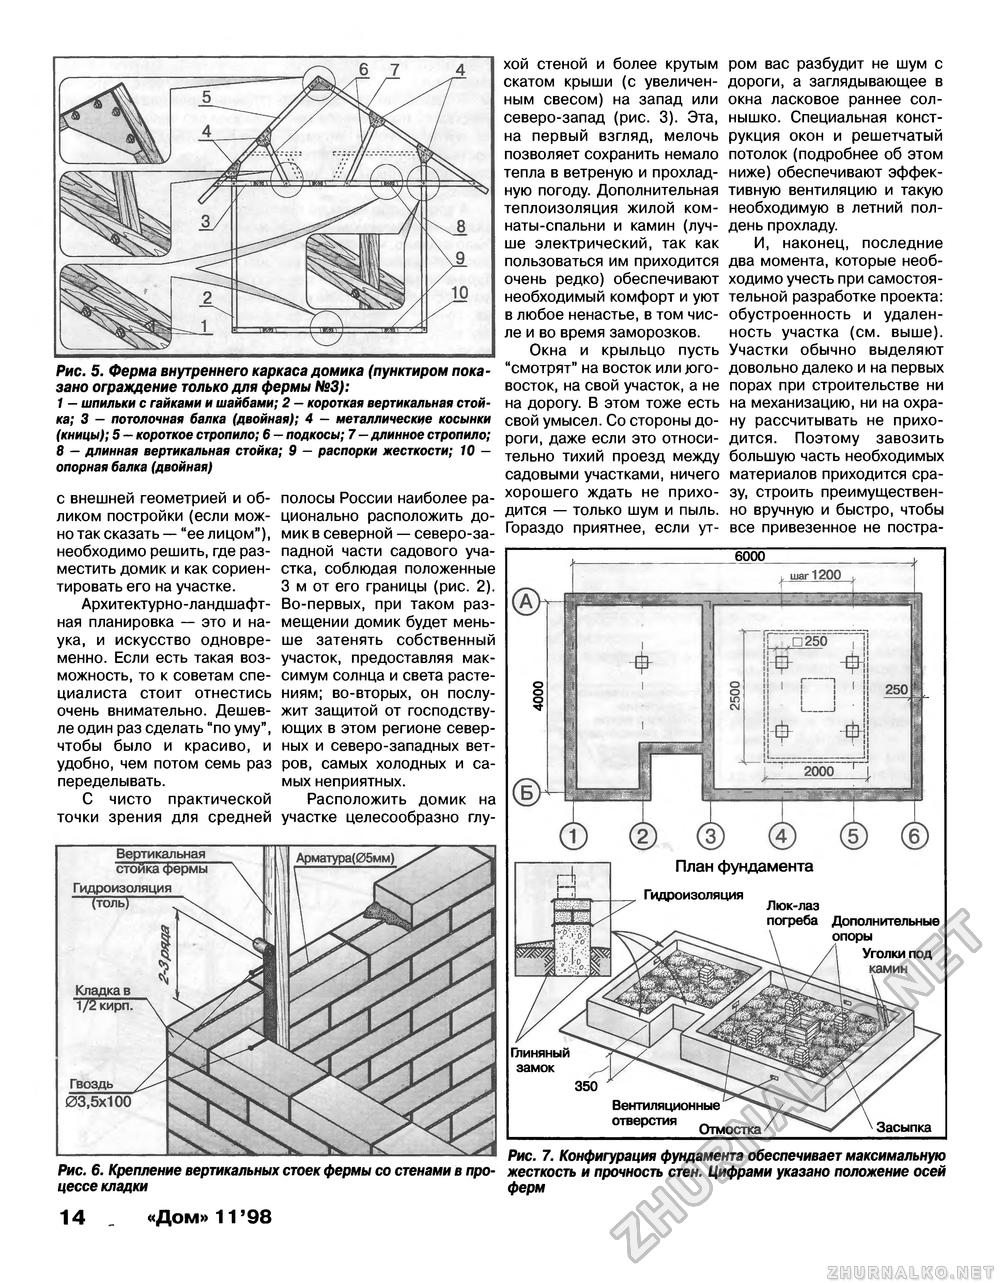 Дом 1998-11, страница 14